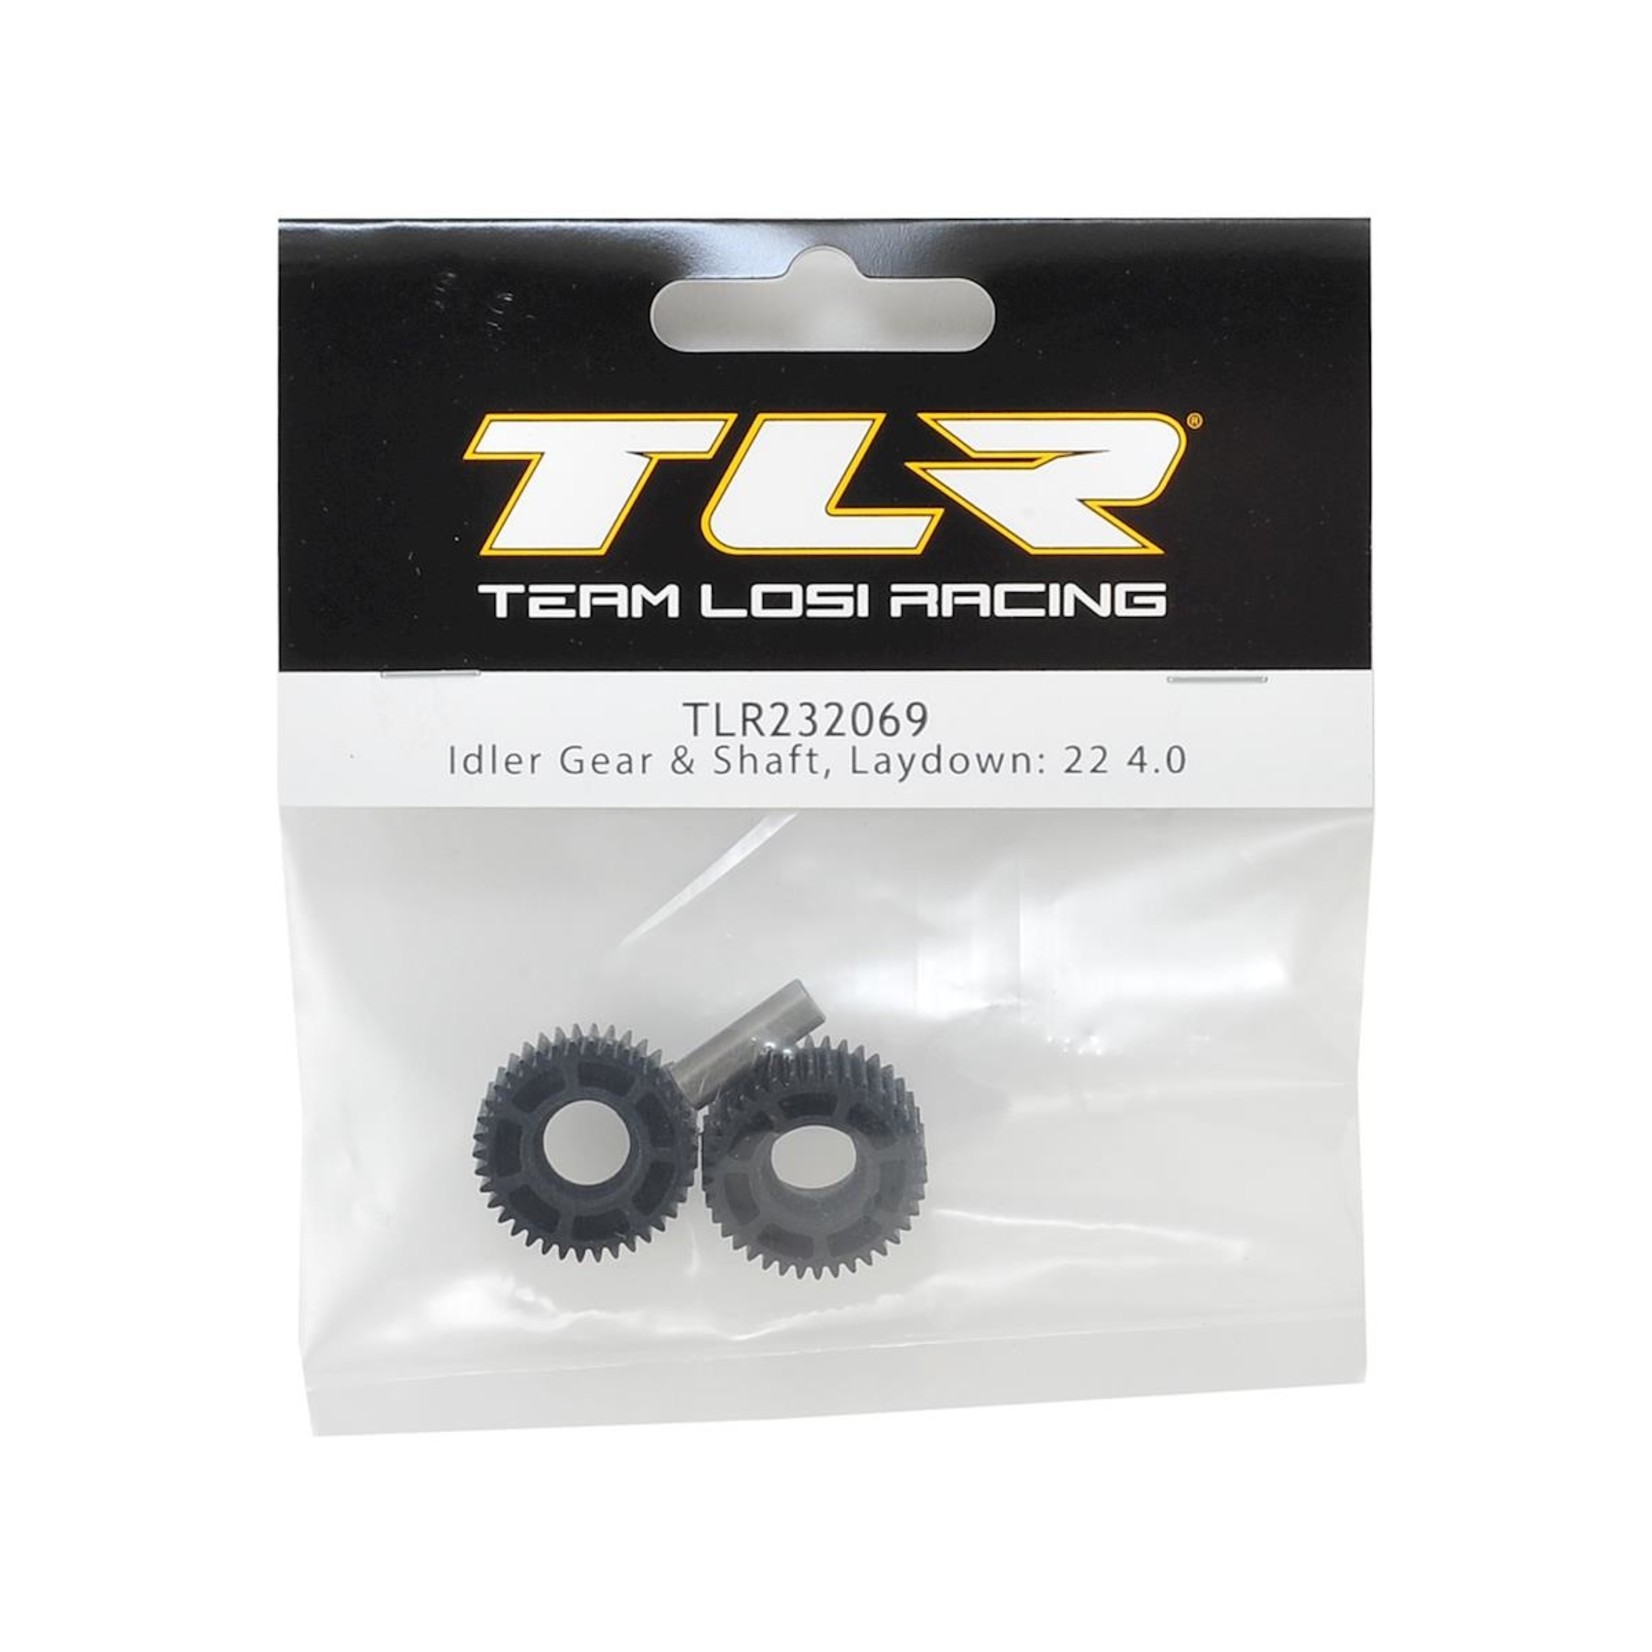 TLR Team Losi Racing 22 4.0 Laydown Idler Gear & Shaft #TLR232069